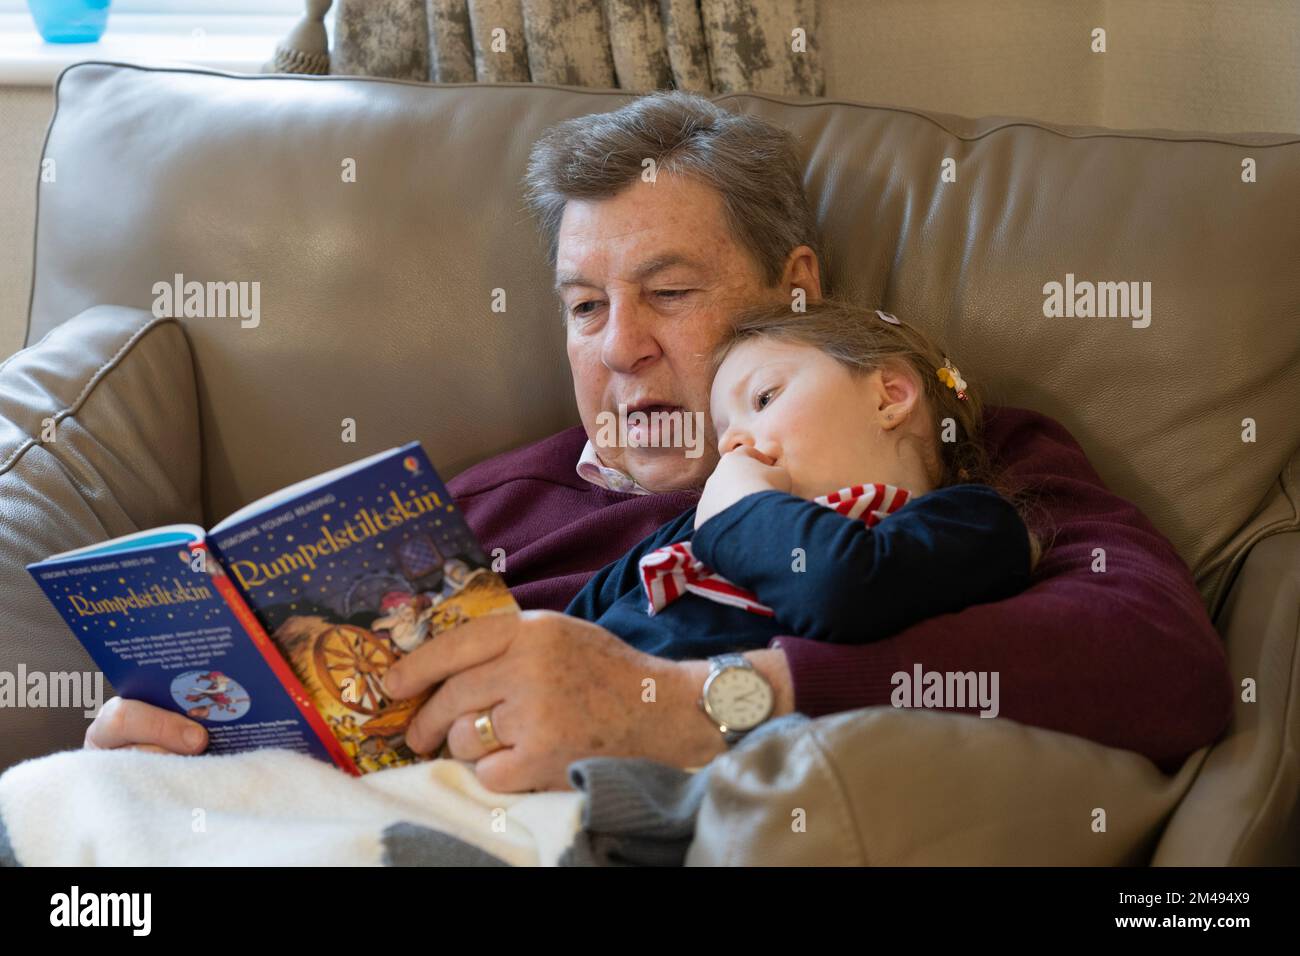 Ein Großvater, der seiner vierjährigen Enkelin, die aufmerksam zuhört, das klassische deutsche Märchenbuch der Kinder Rumpelstilzchen vorliest. UK Stockfoto